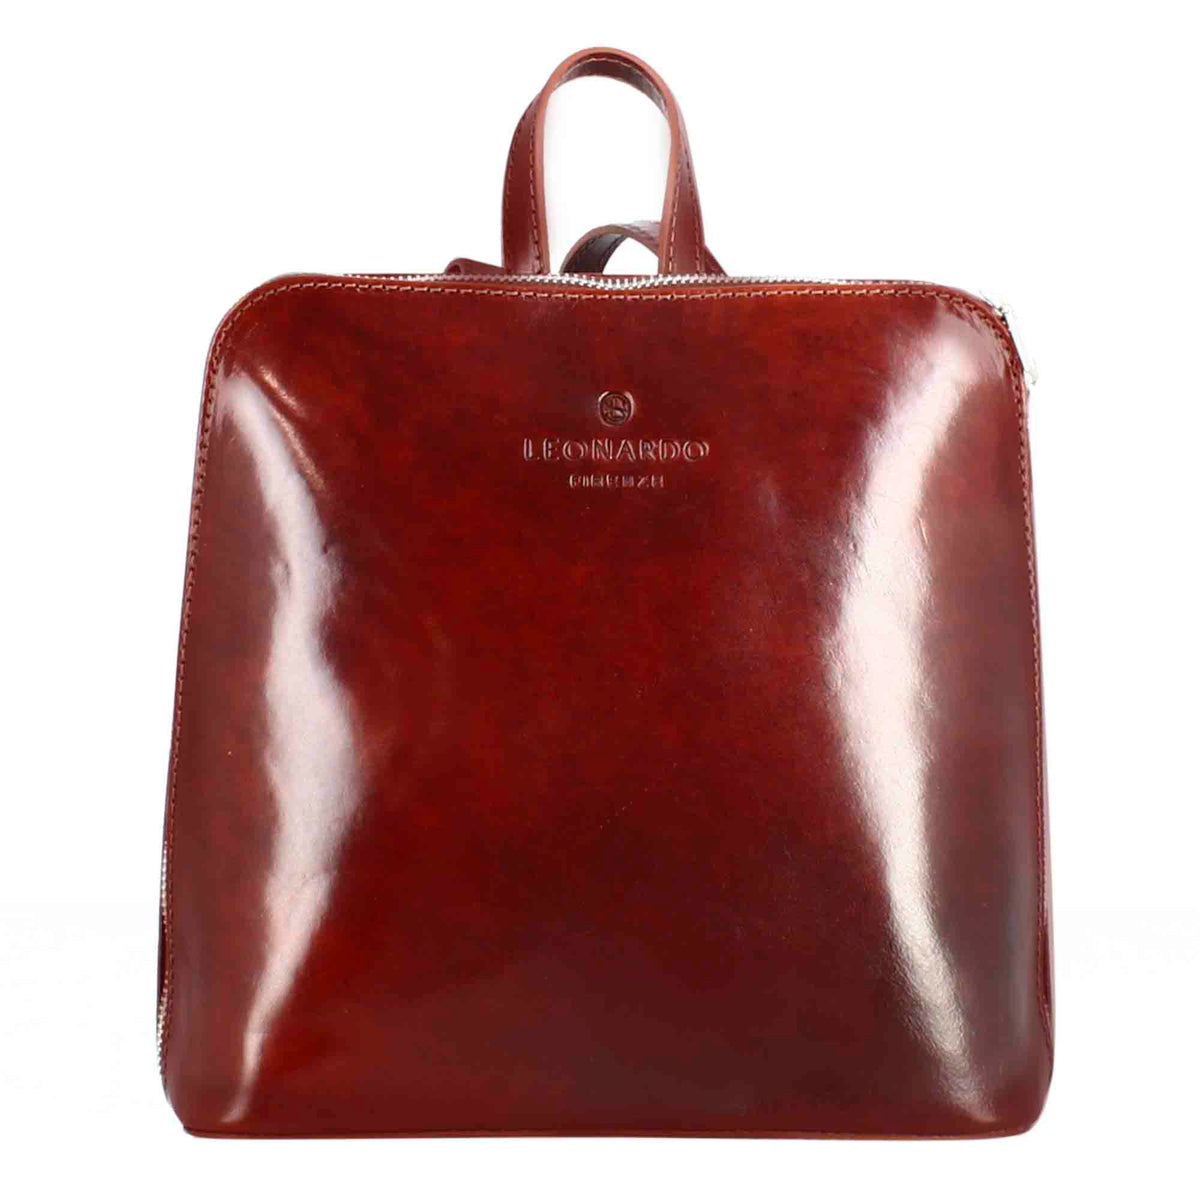 Borse Donna, Shopping bag con zip Red